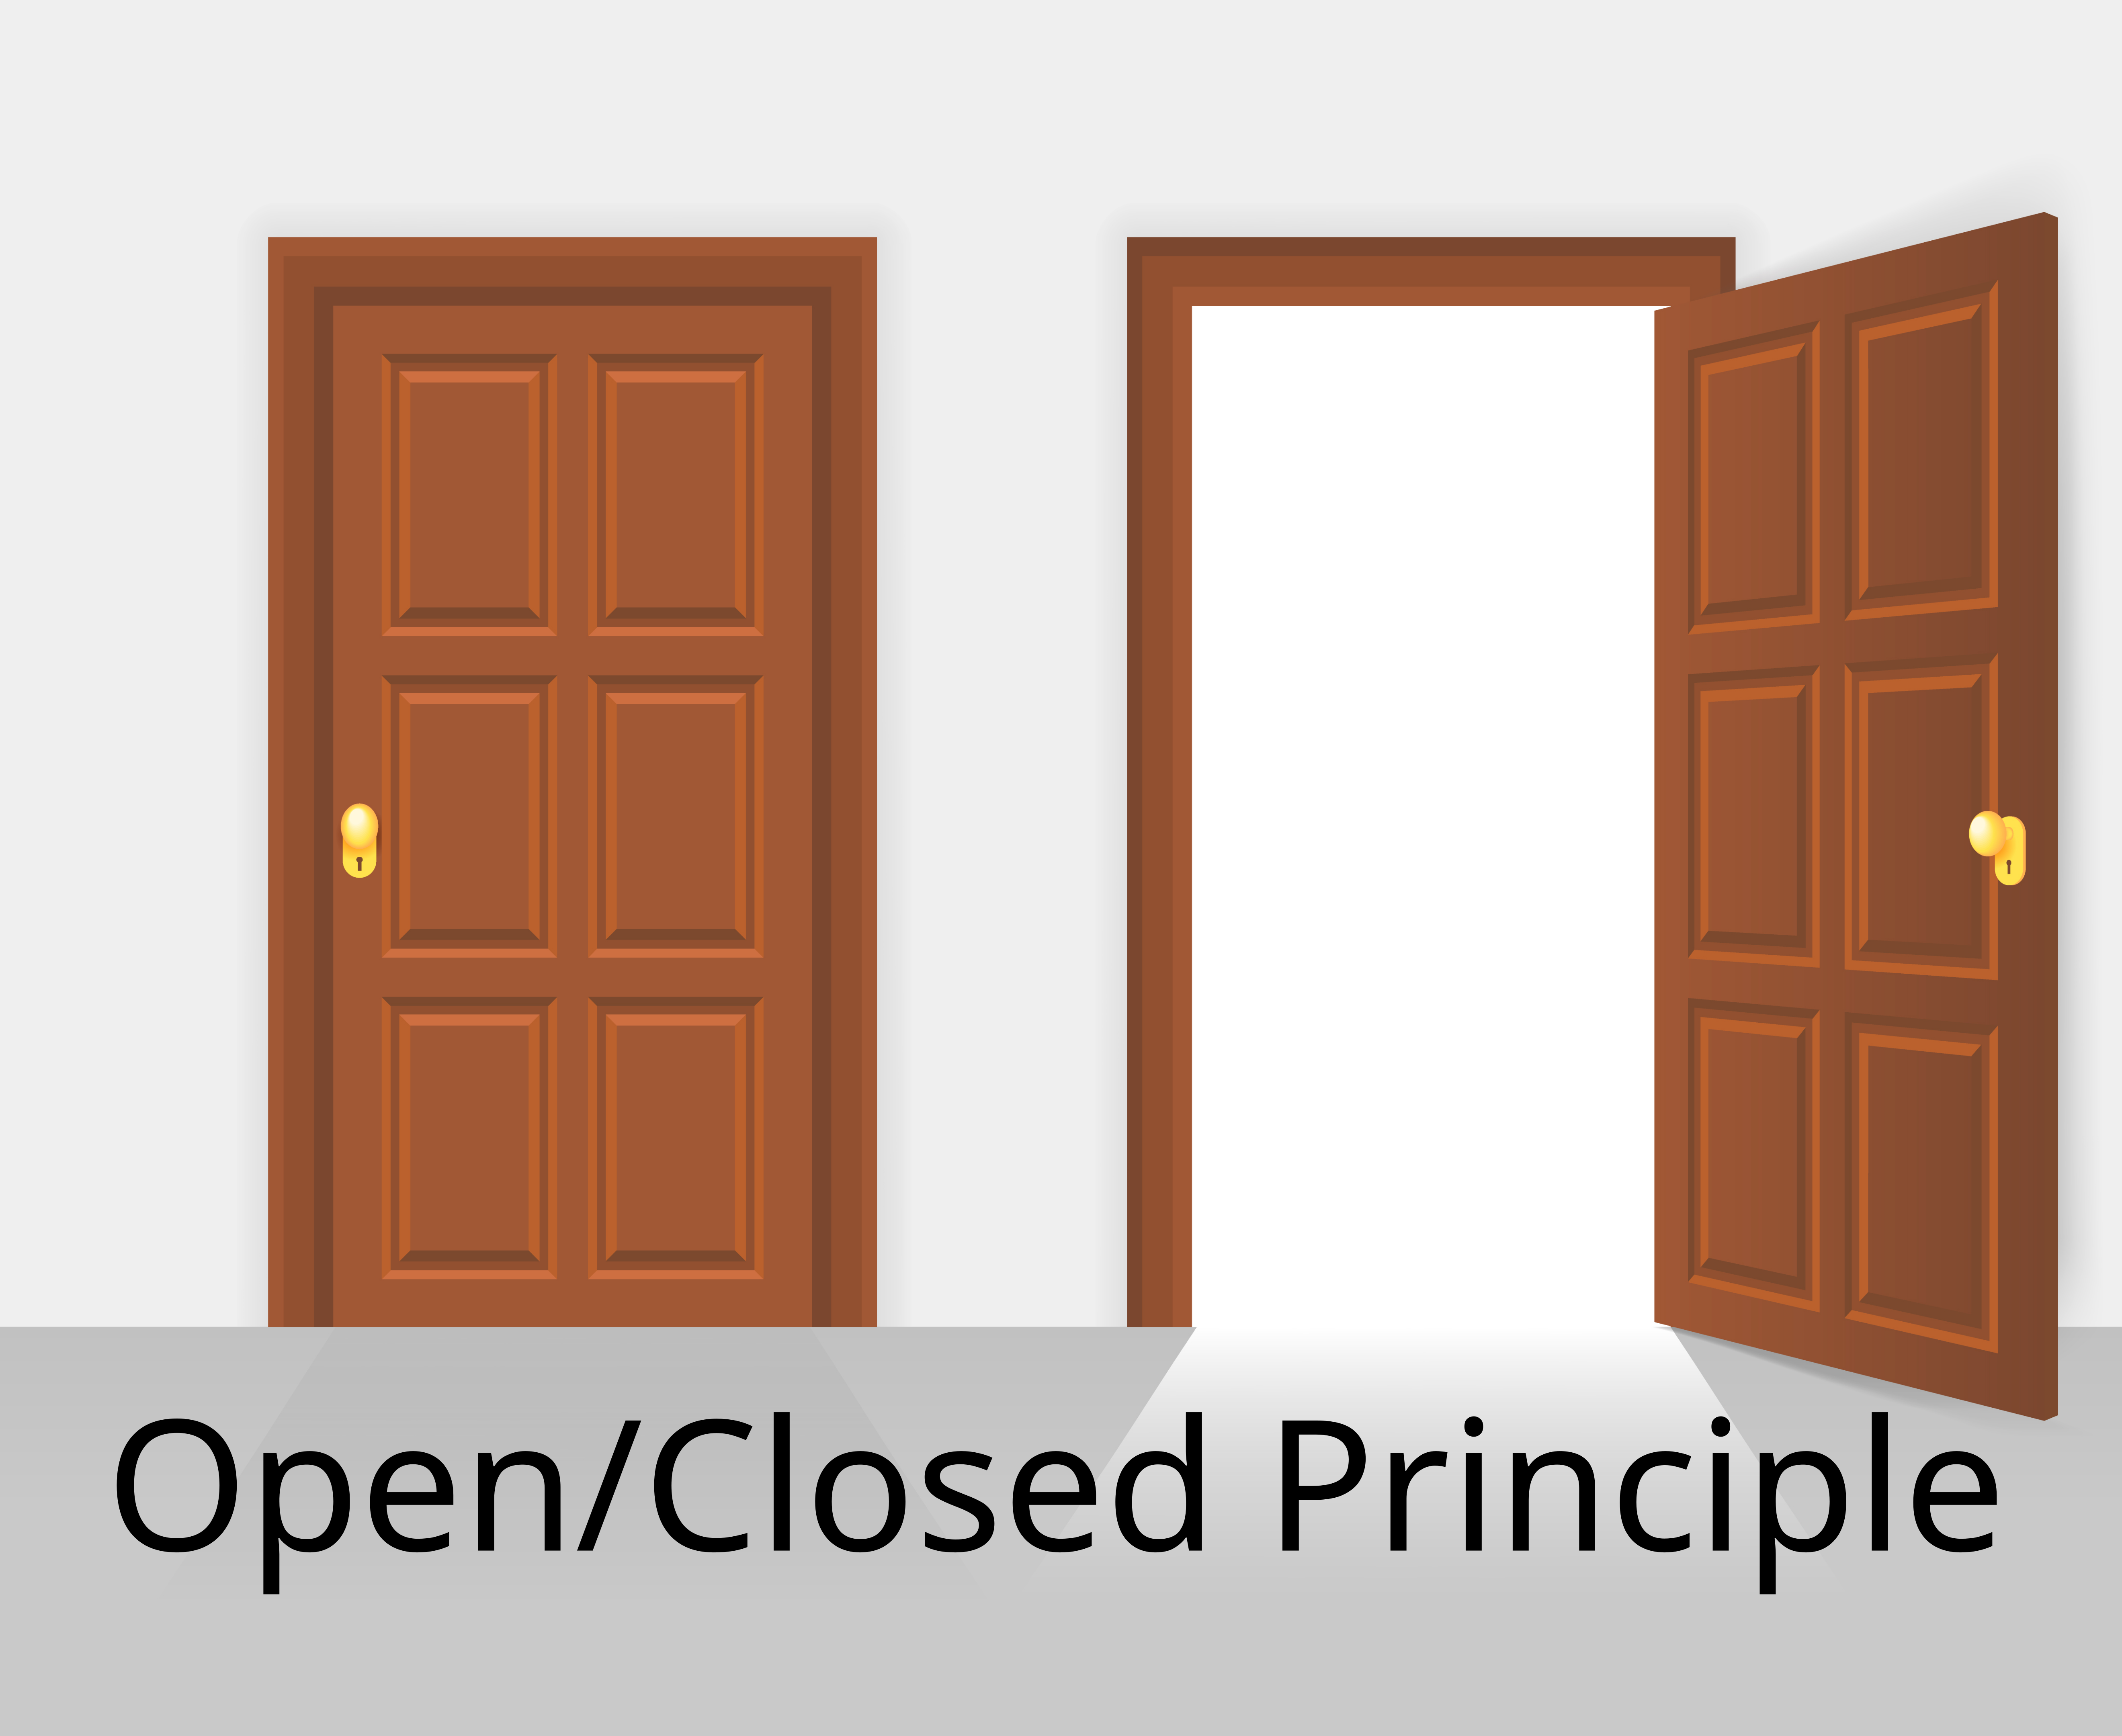 O → Open/Closed Principle (Principio Aberto/Fechado)